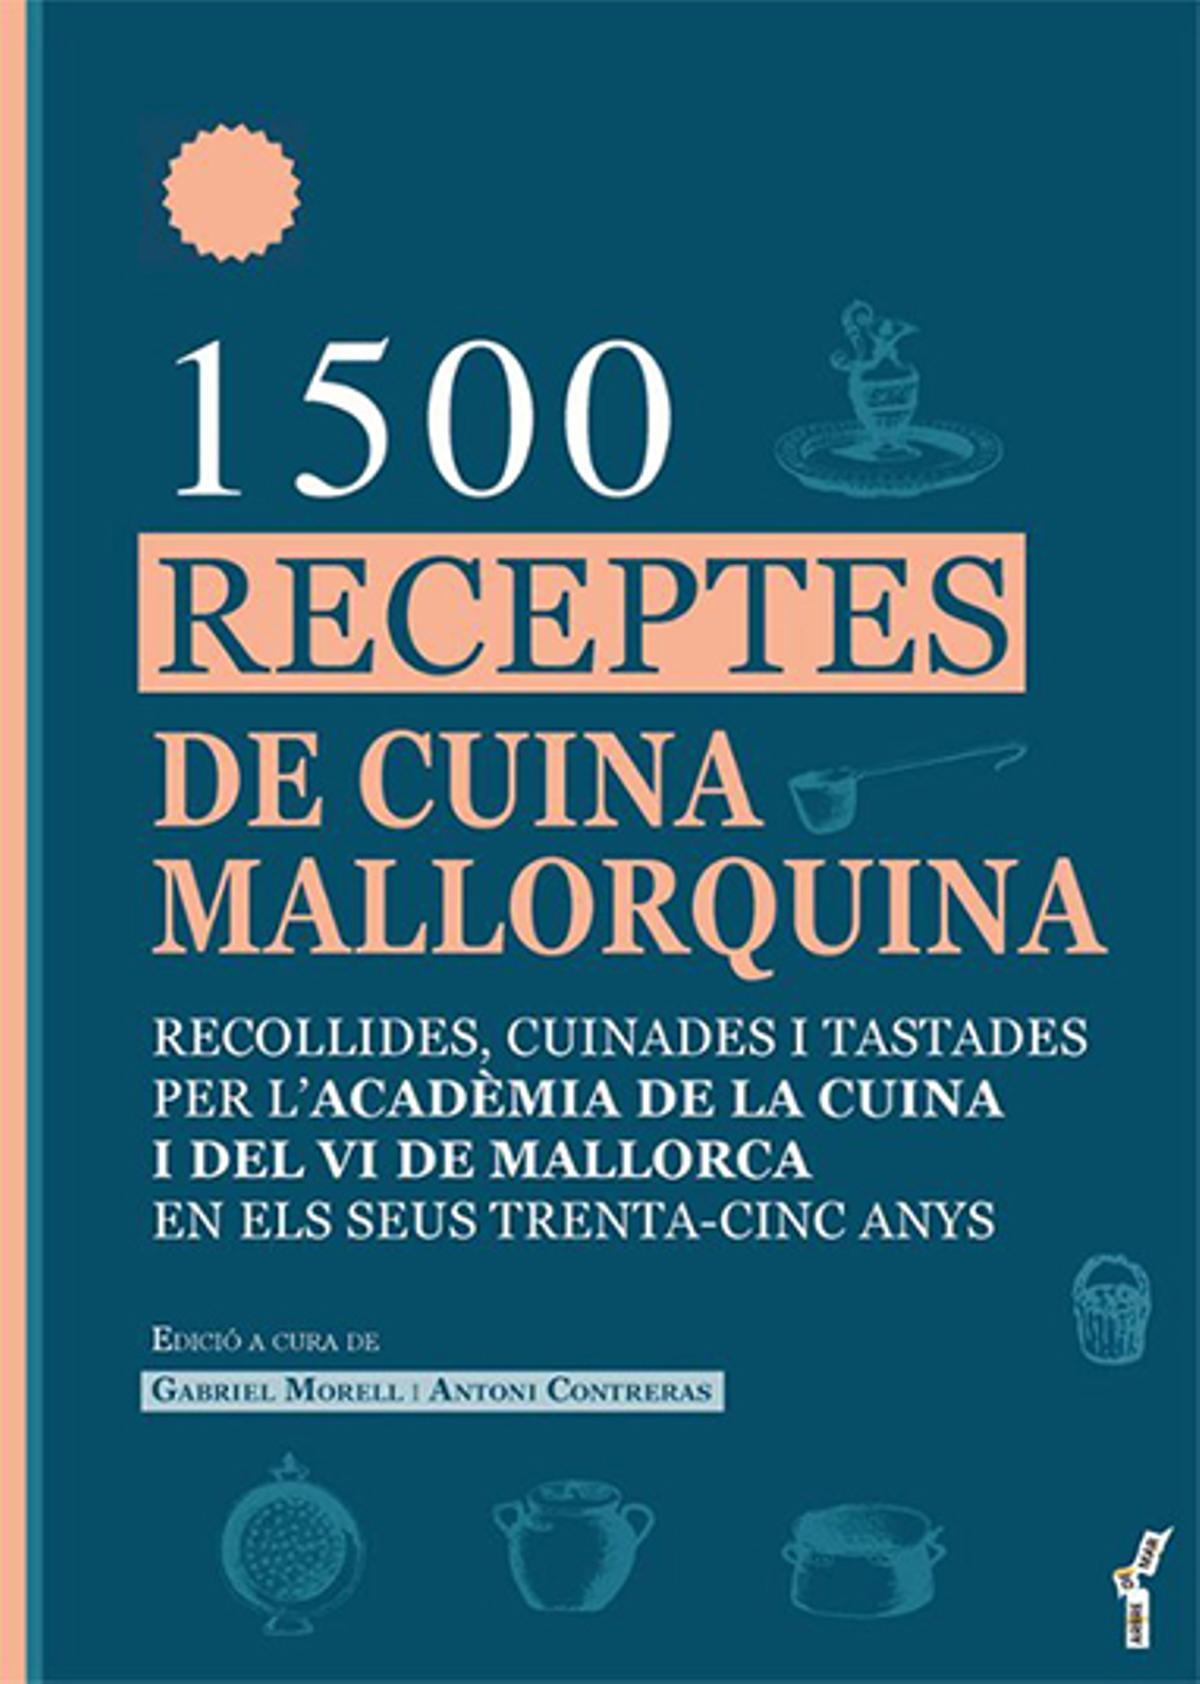 1500 receptes de cuina mallorquina. Documenta, 43 euros